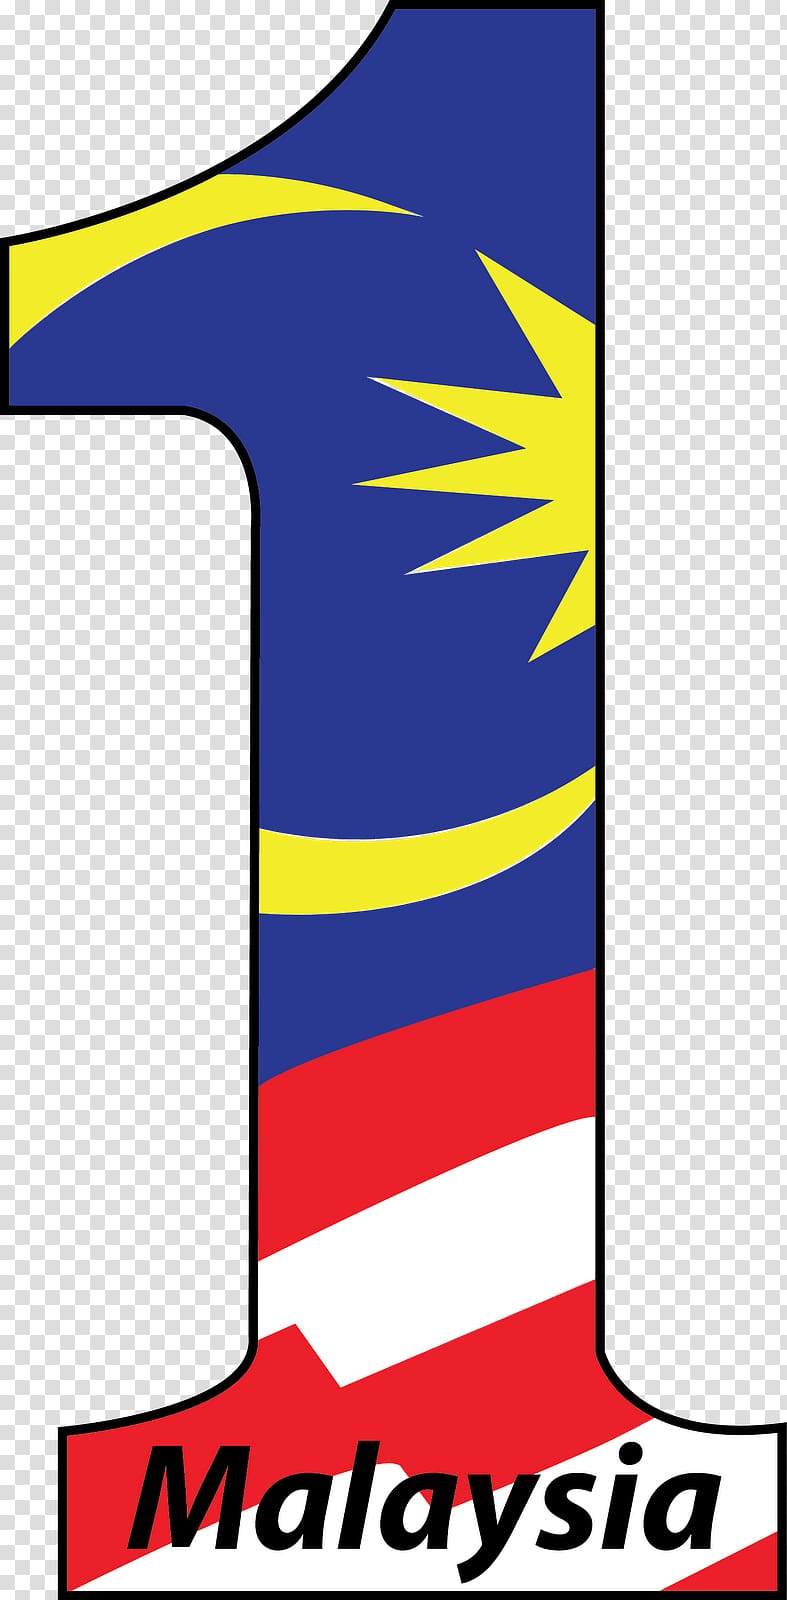 1Malaysia Logo Sarawak Government of Malaysia, nombor transparent background PNG clipart